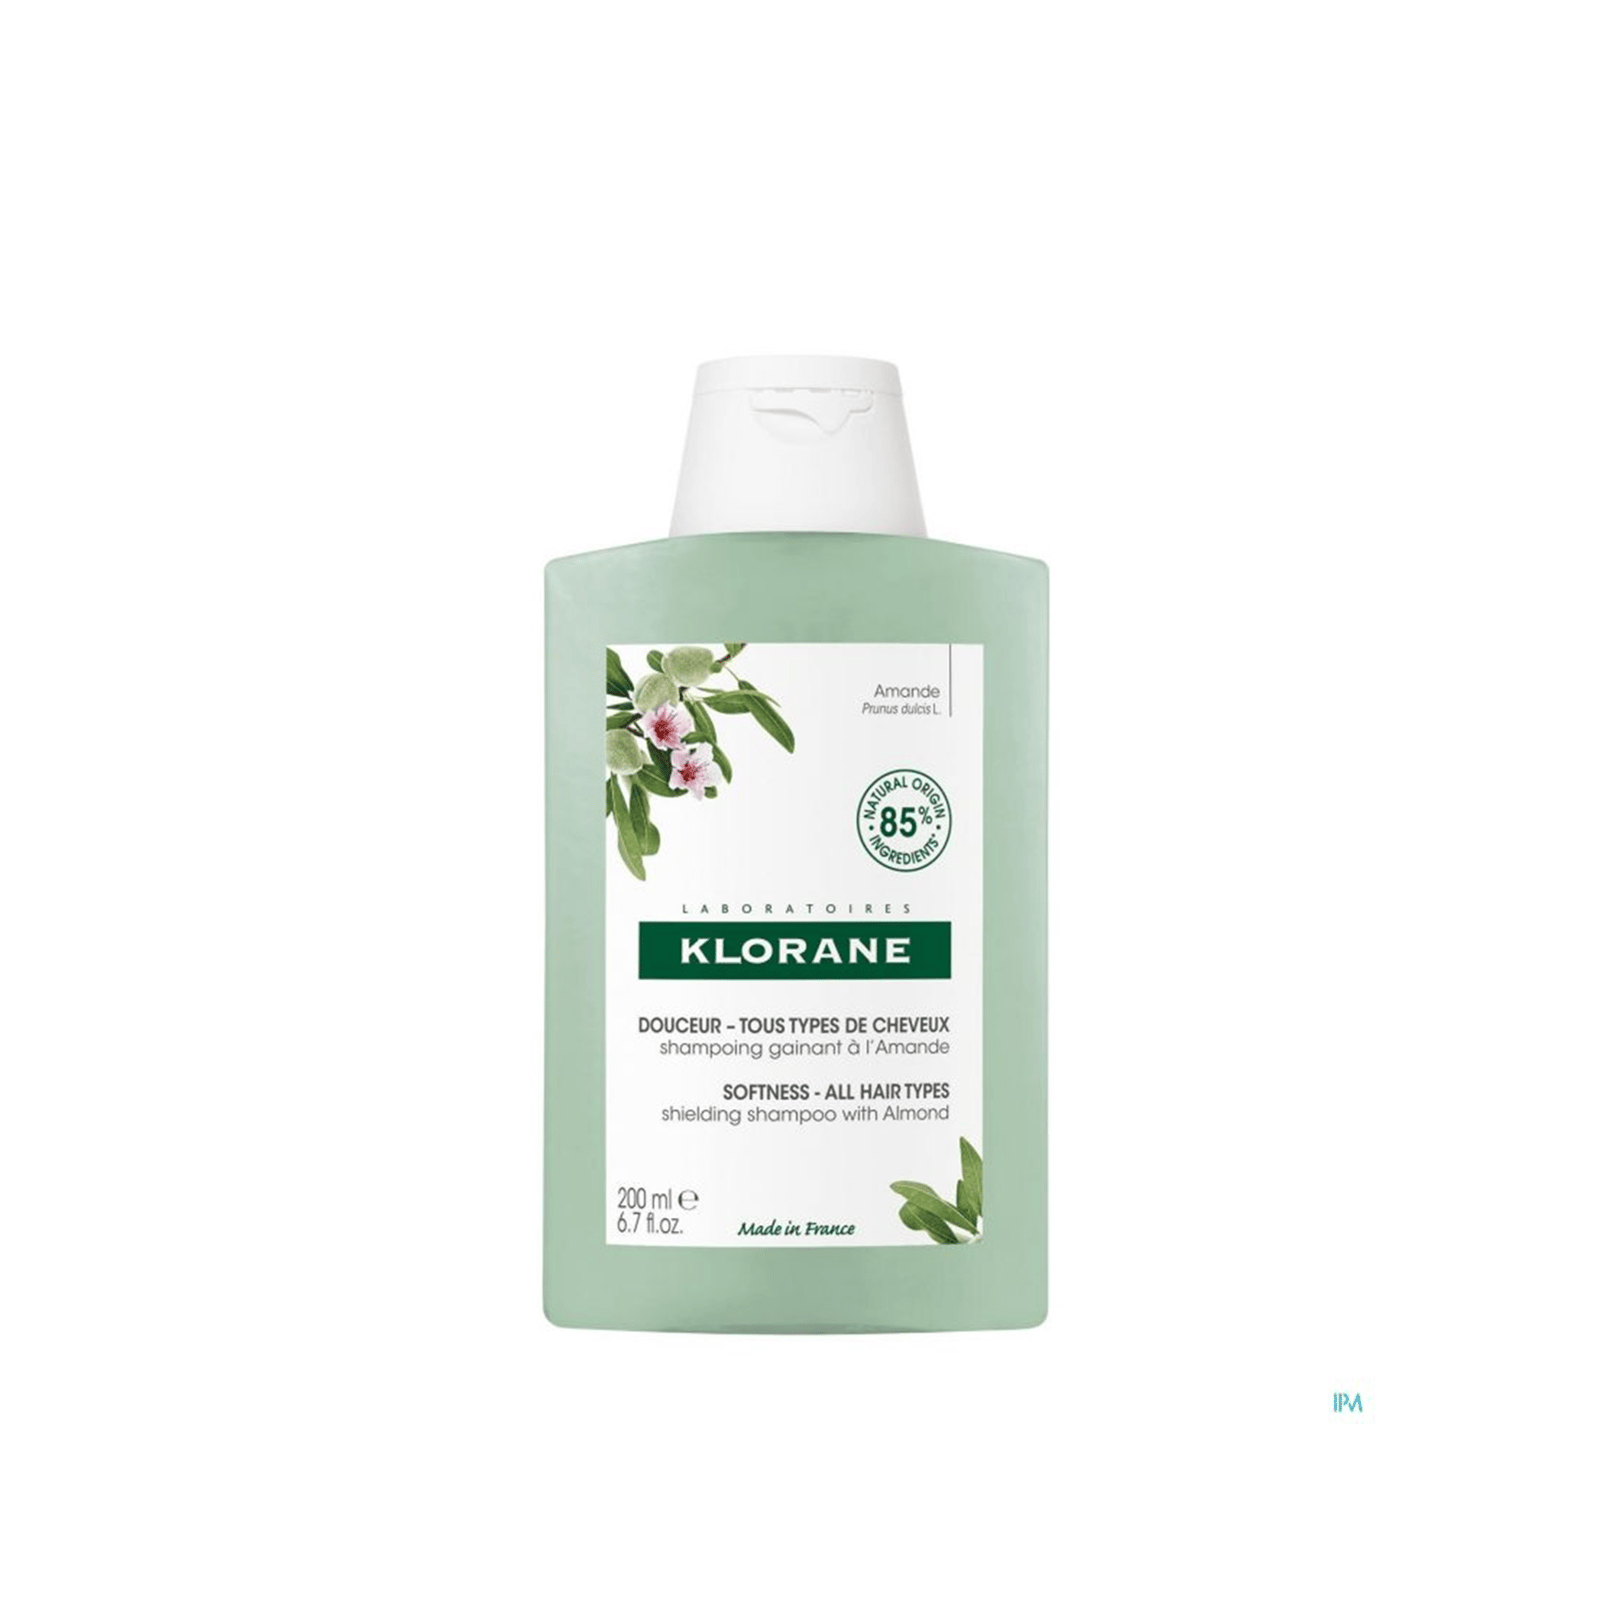 Klorane Softness Shielding Shampoo with Almond